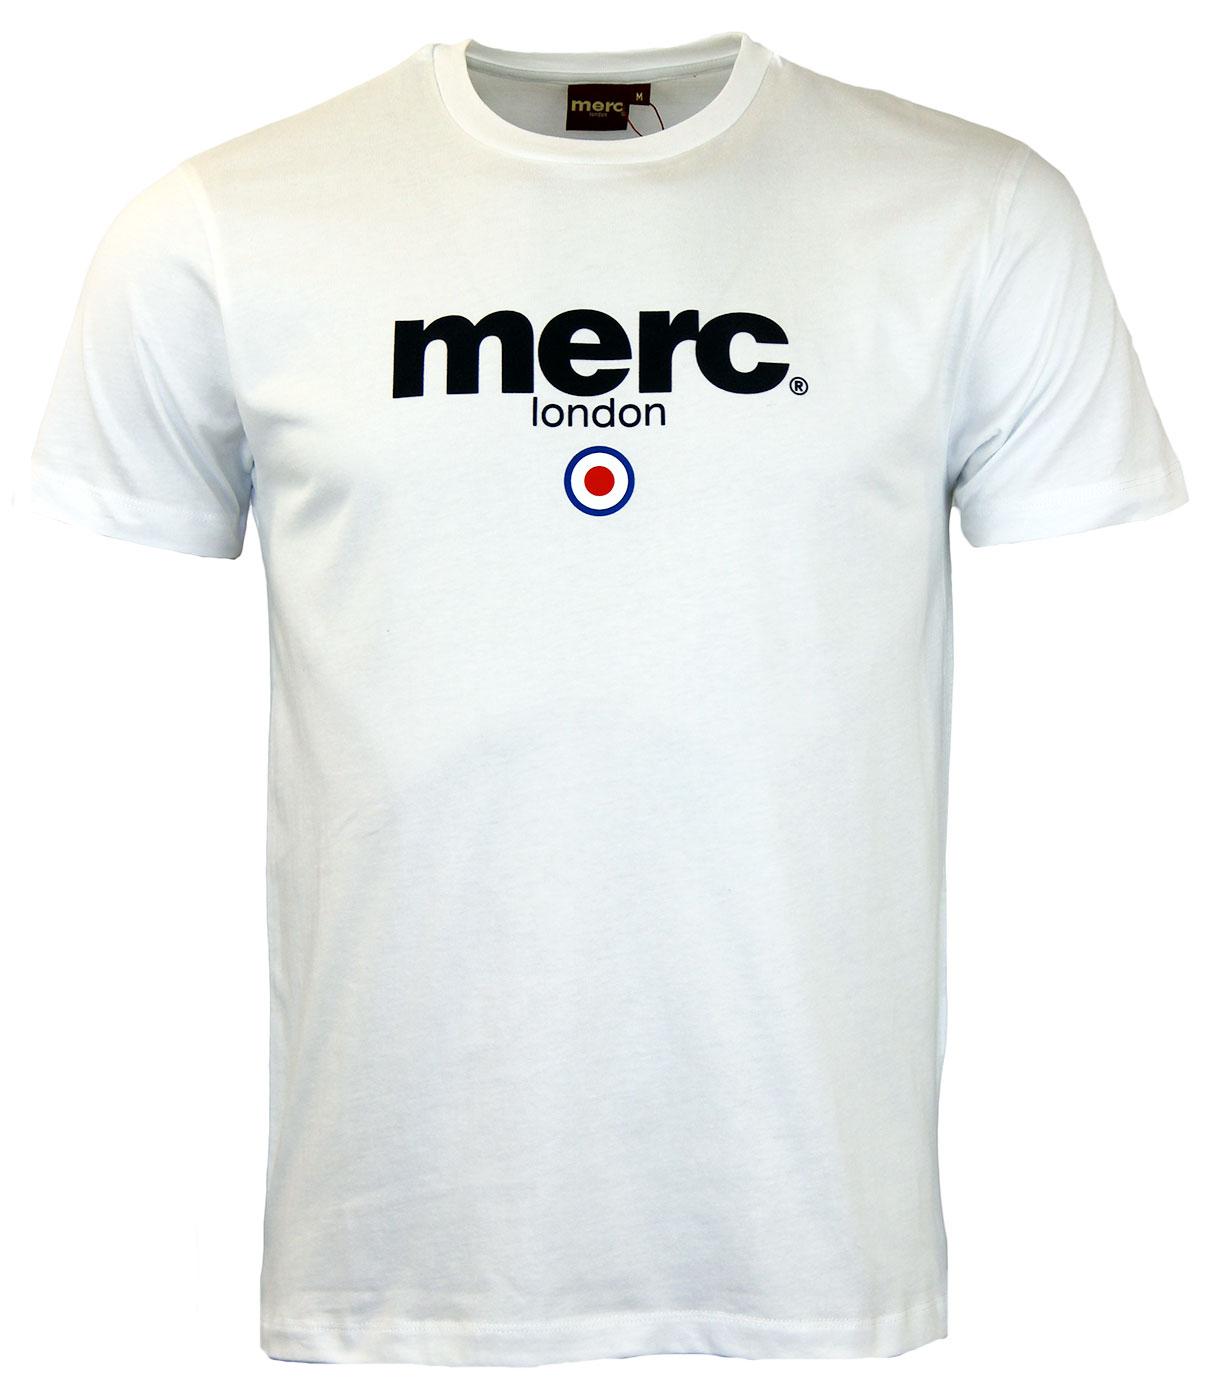 MERC Brighton Retro Indie Mod Target Signature T-Shirt White